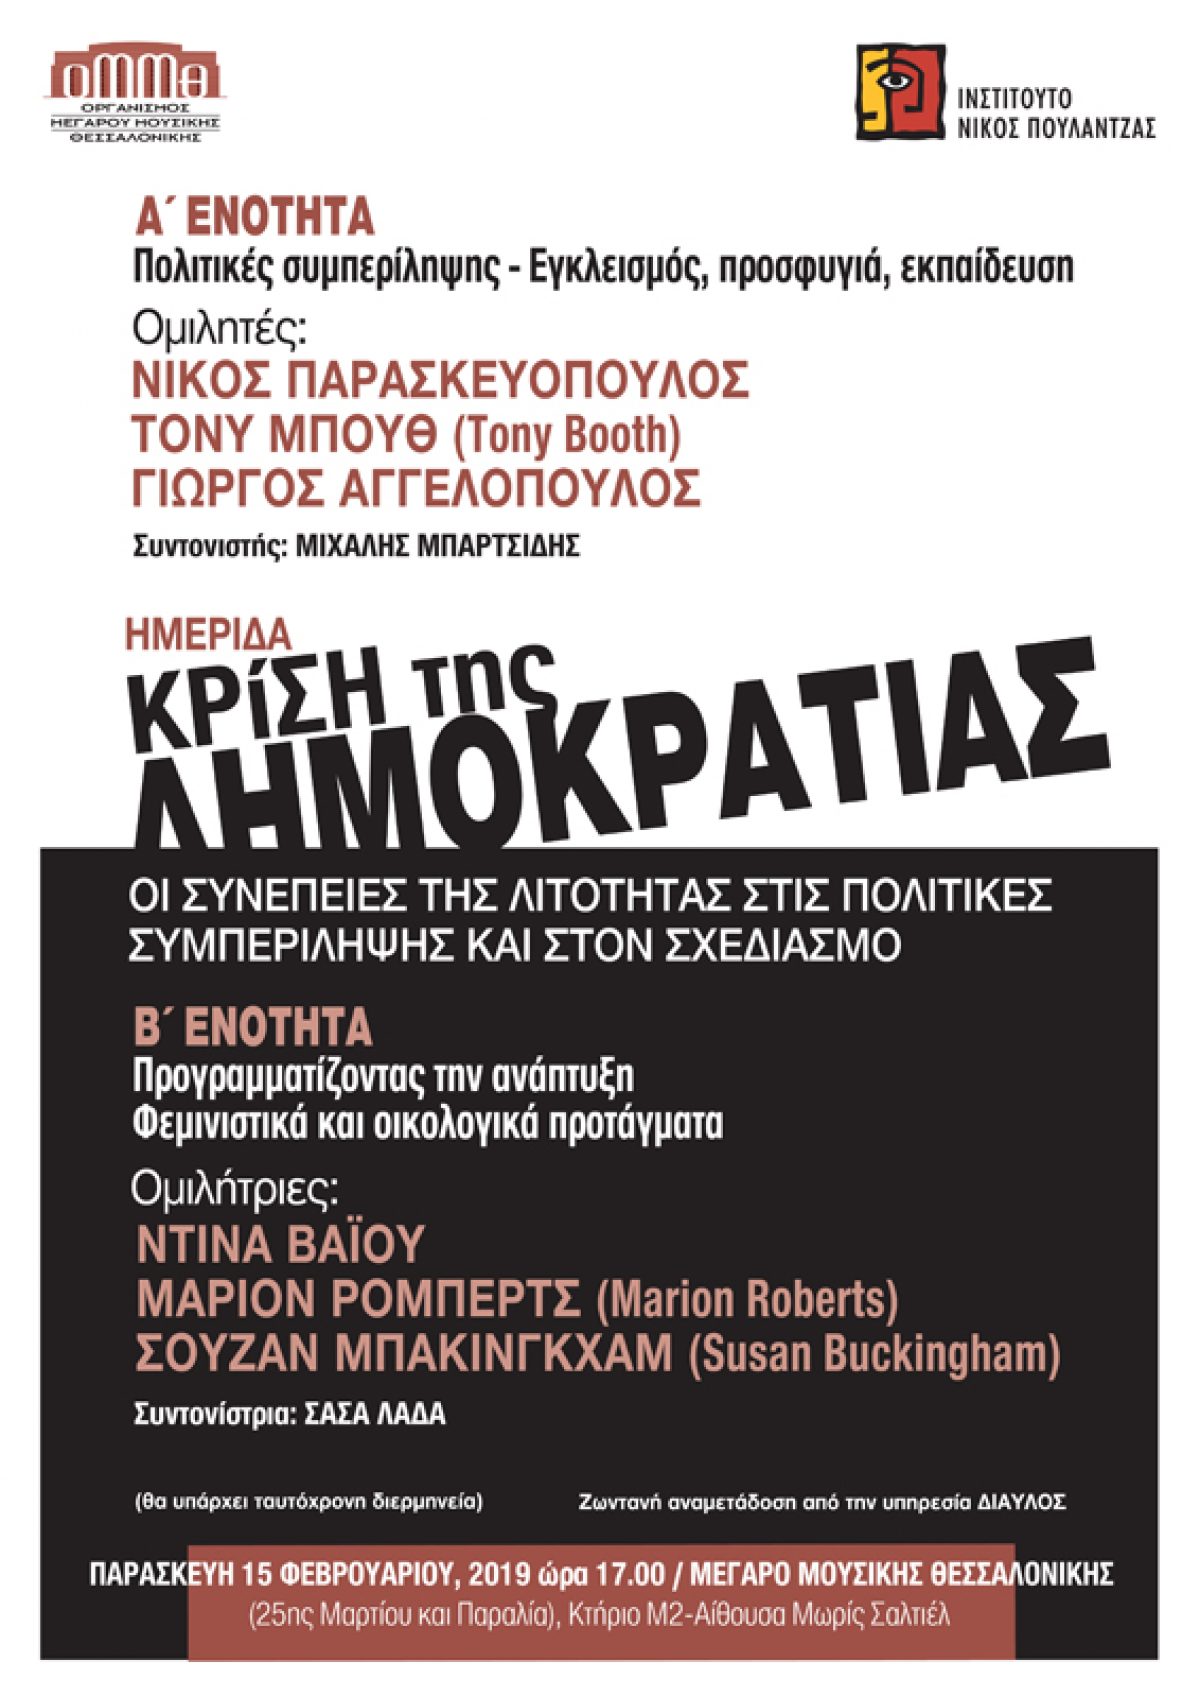 Ημερίδα “Κρίση της δημοκρατίας. Οι συνέπειες της λιτότητας στις πολιτικές συμπερίληψης και στον σχεδιασμό”, Μέγαρο Μουσικής Θεσσαλονίκης, 15.2.2019